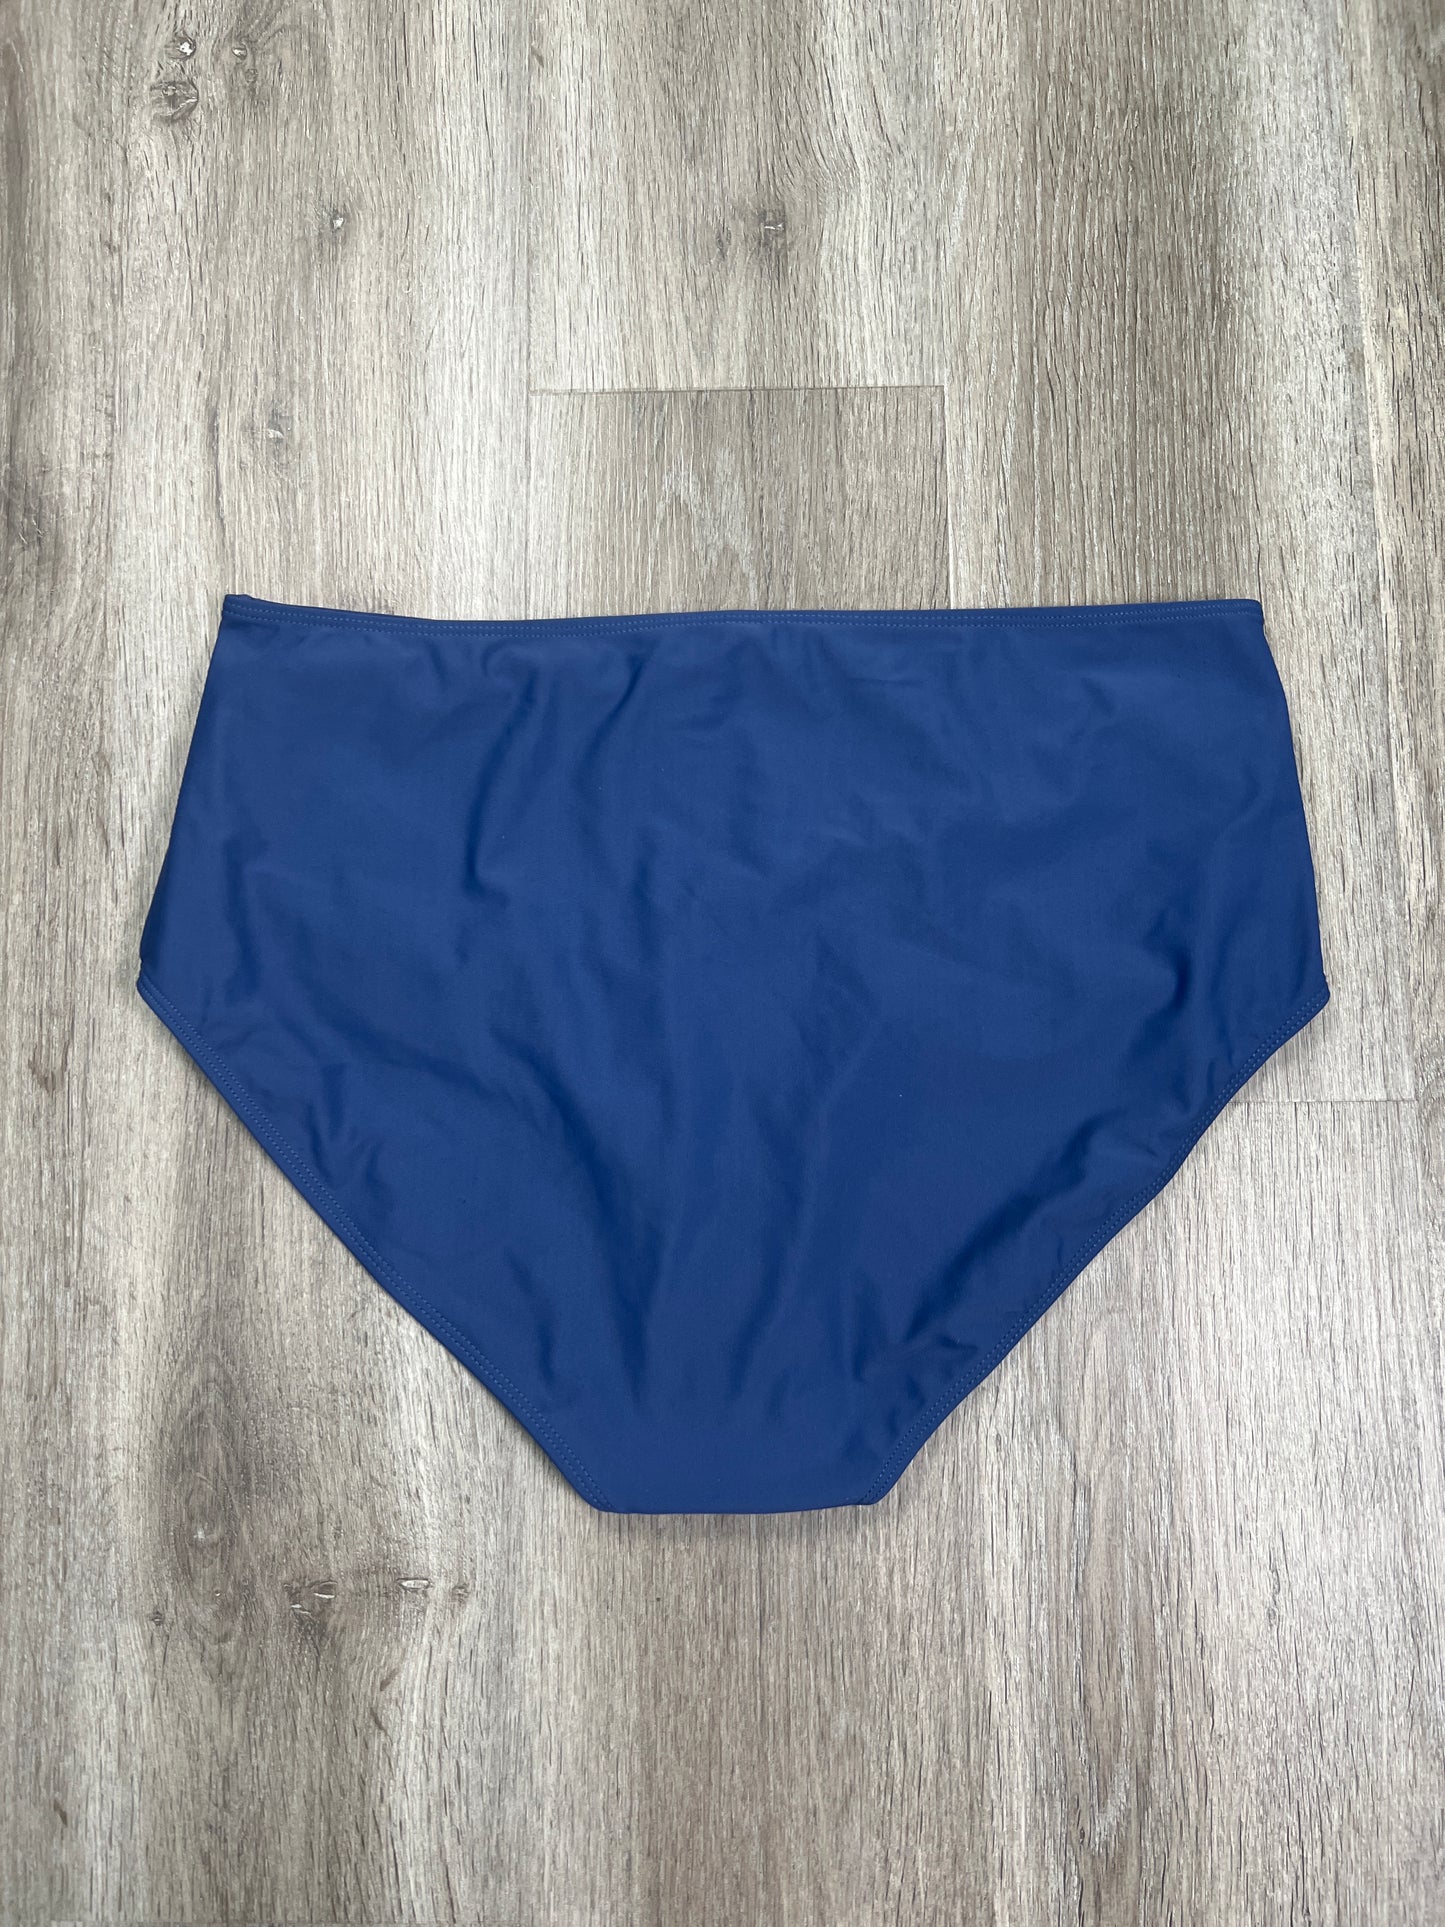 Swimsuit Bottom By Janela Bay  Size: Xxl